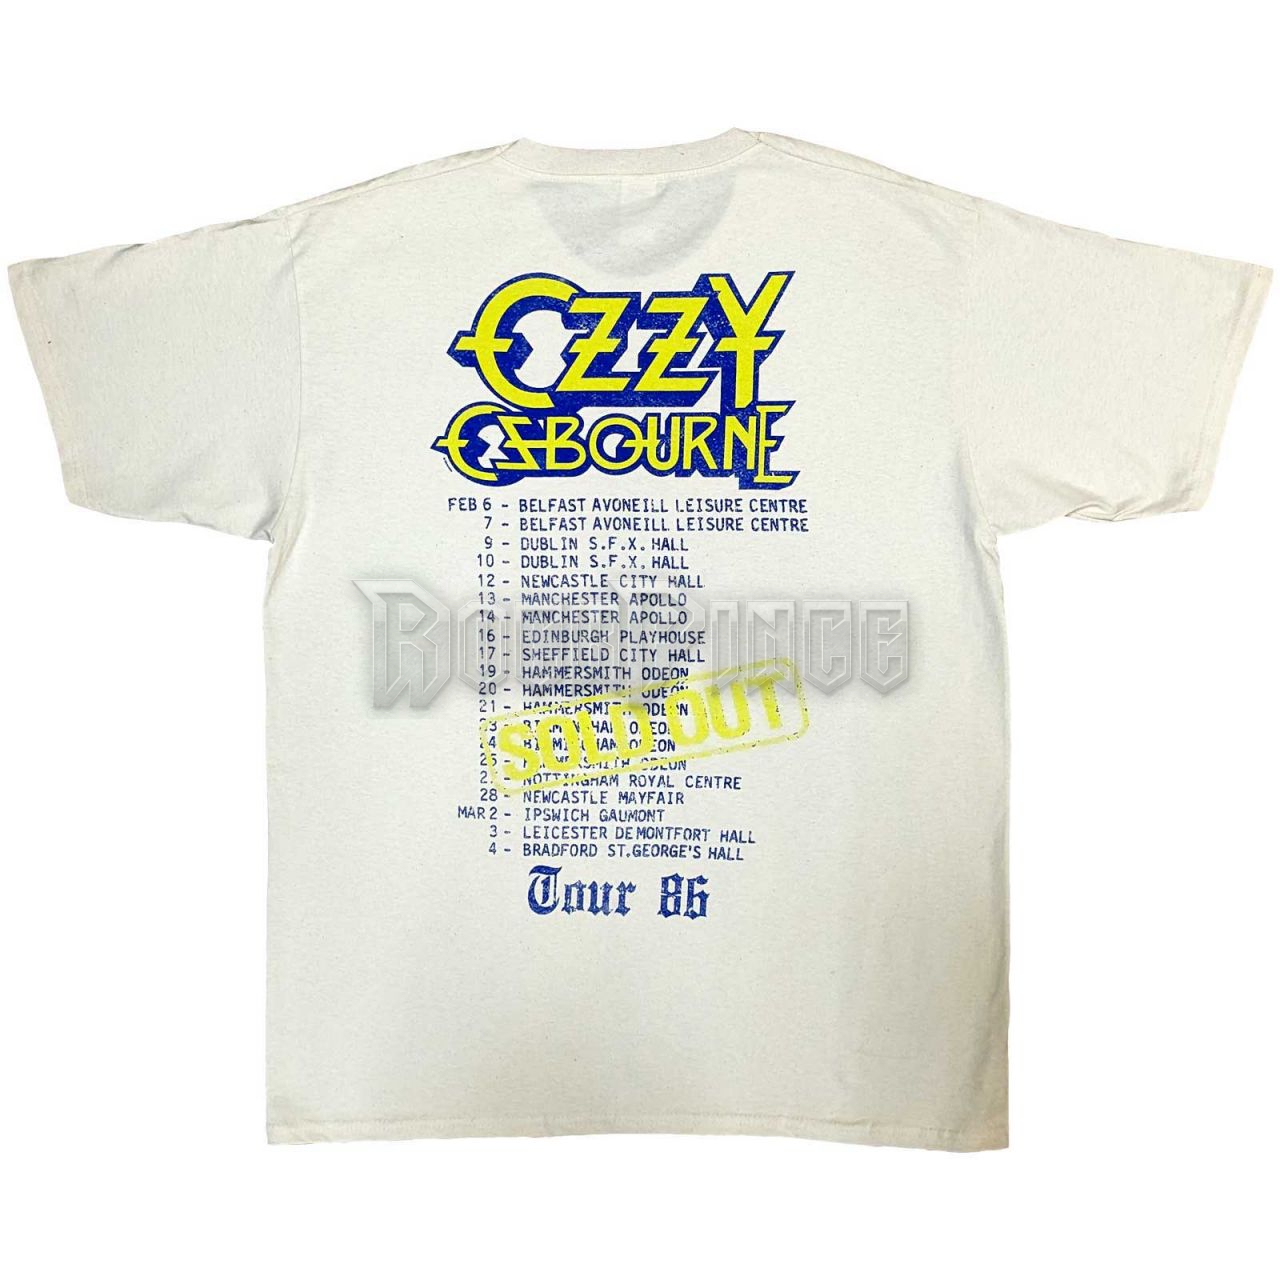 Ozzy Osbourne - The Ultimate Sin Tour '86 - unisex póló - OZZTS36MNAT